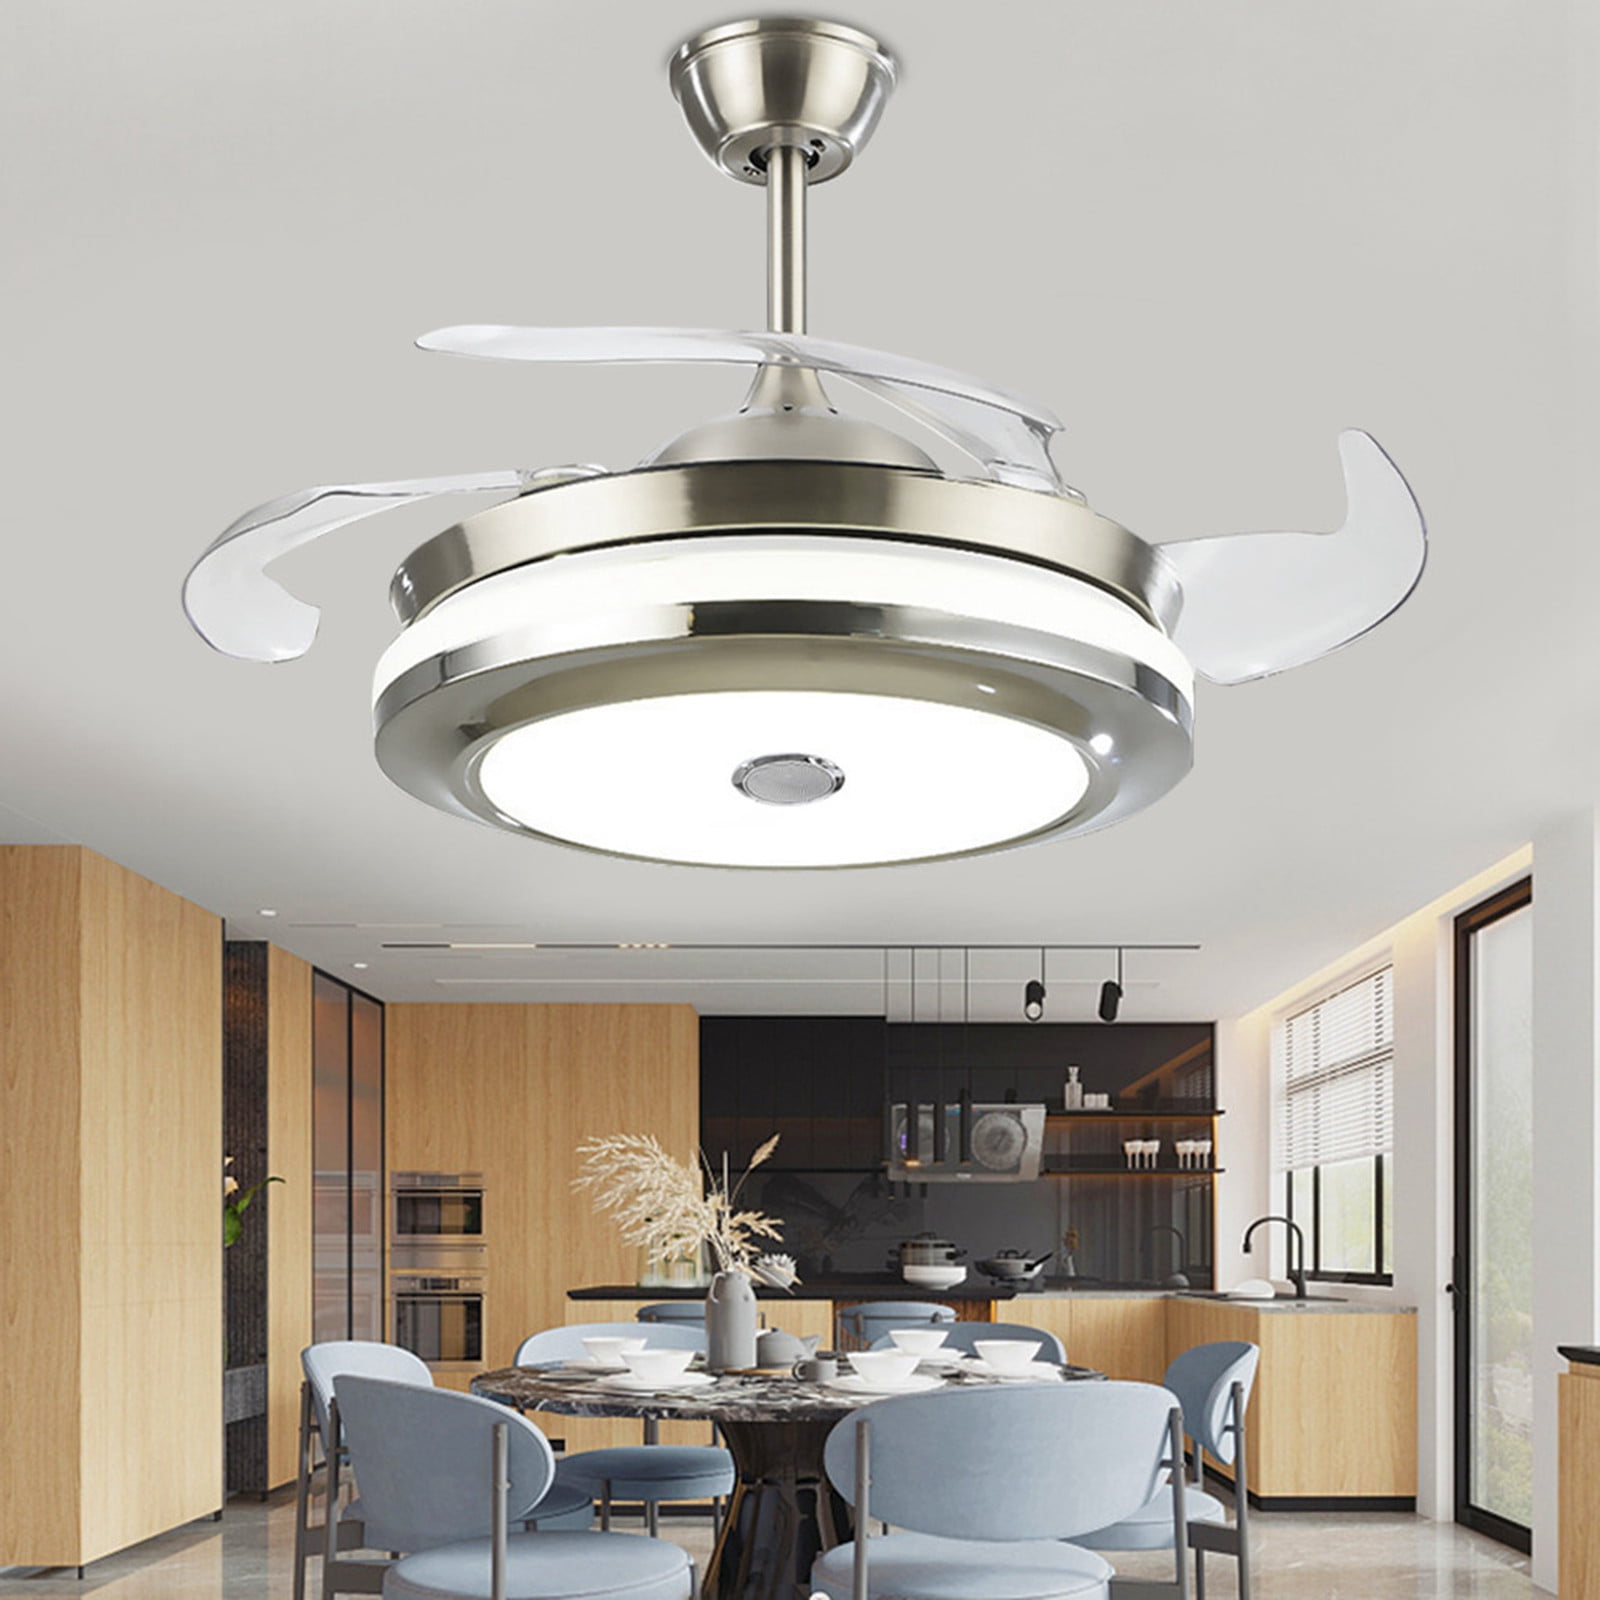 42"Reversible Ceiling Fan Lamp 5 Stainless Steel Blade LED Fan Chandelier Remote 